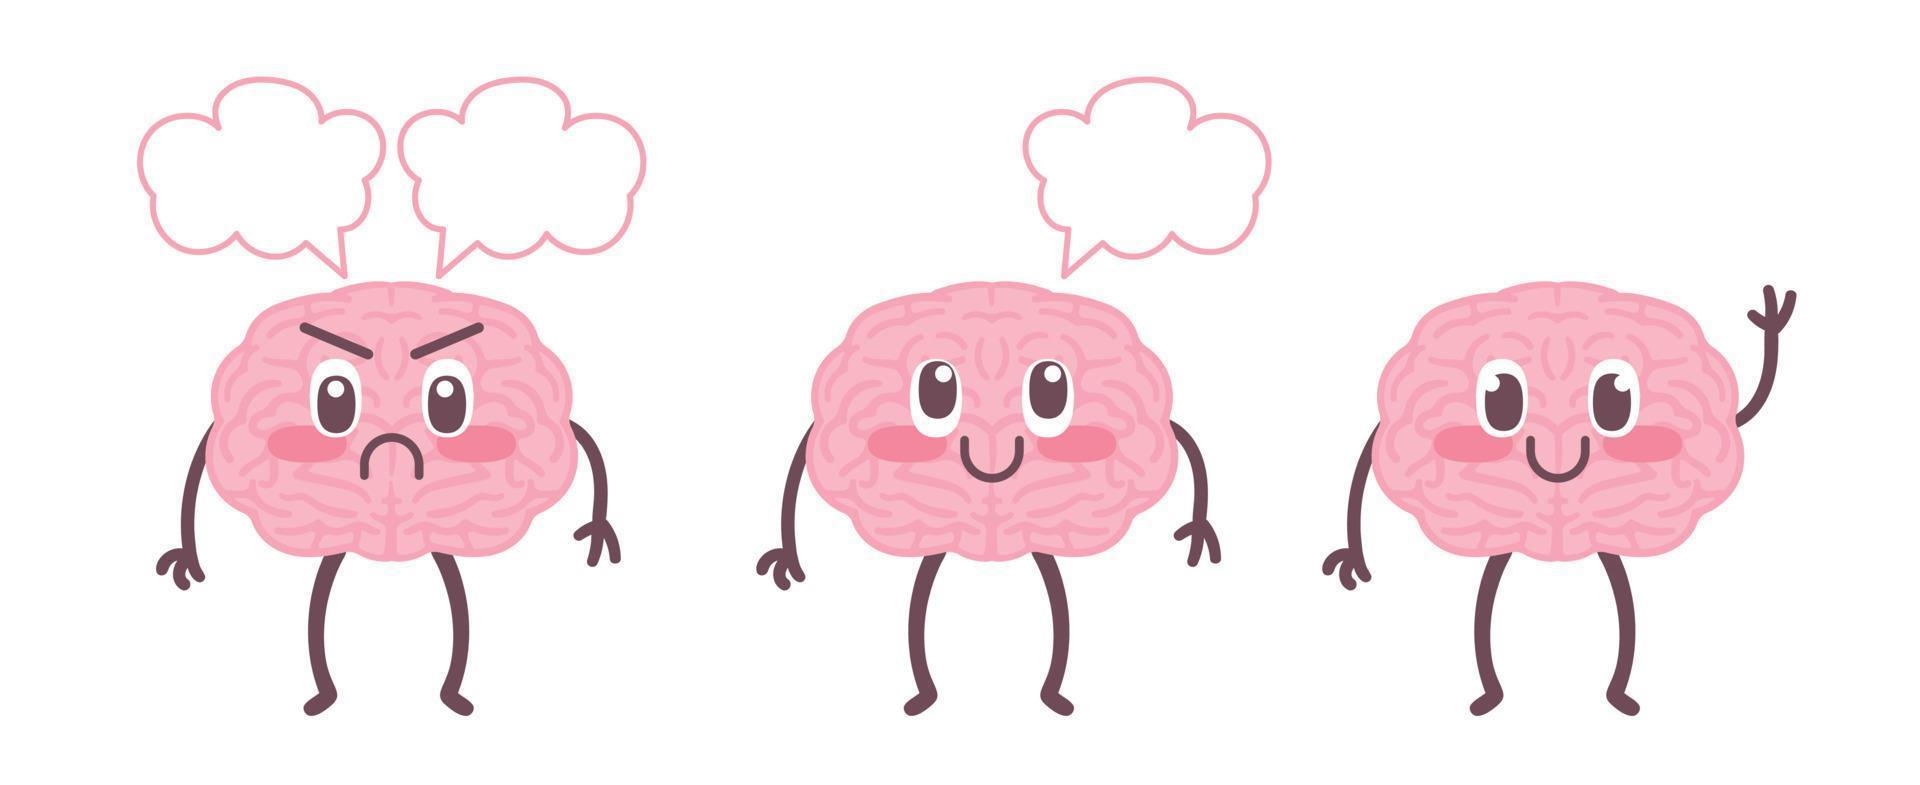 bonito cérebro feliz conjunto ilustração. desenho plano ícone da mascote do personagem do órgão humano dos desenhos animados. nutrição, treinar seu cérebro, cuidados com a mente, ajuste, atenção plena, saudável, insalubre. vetor